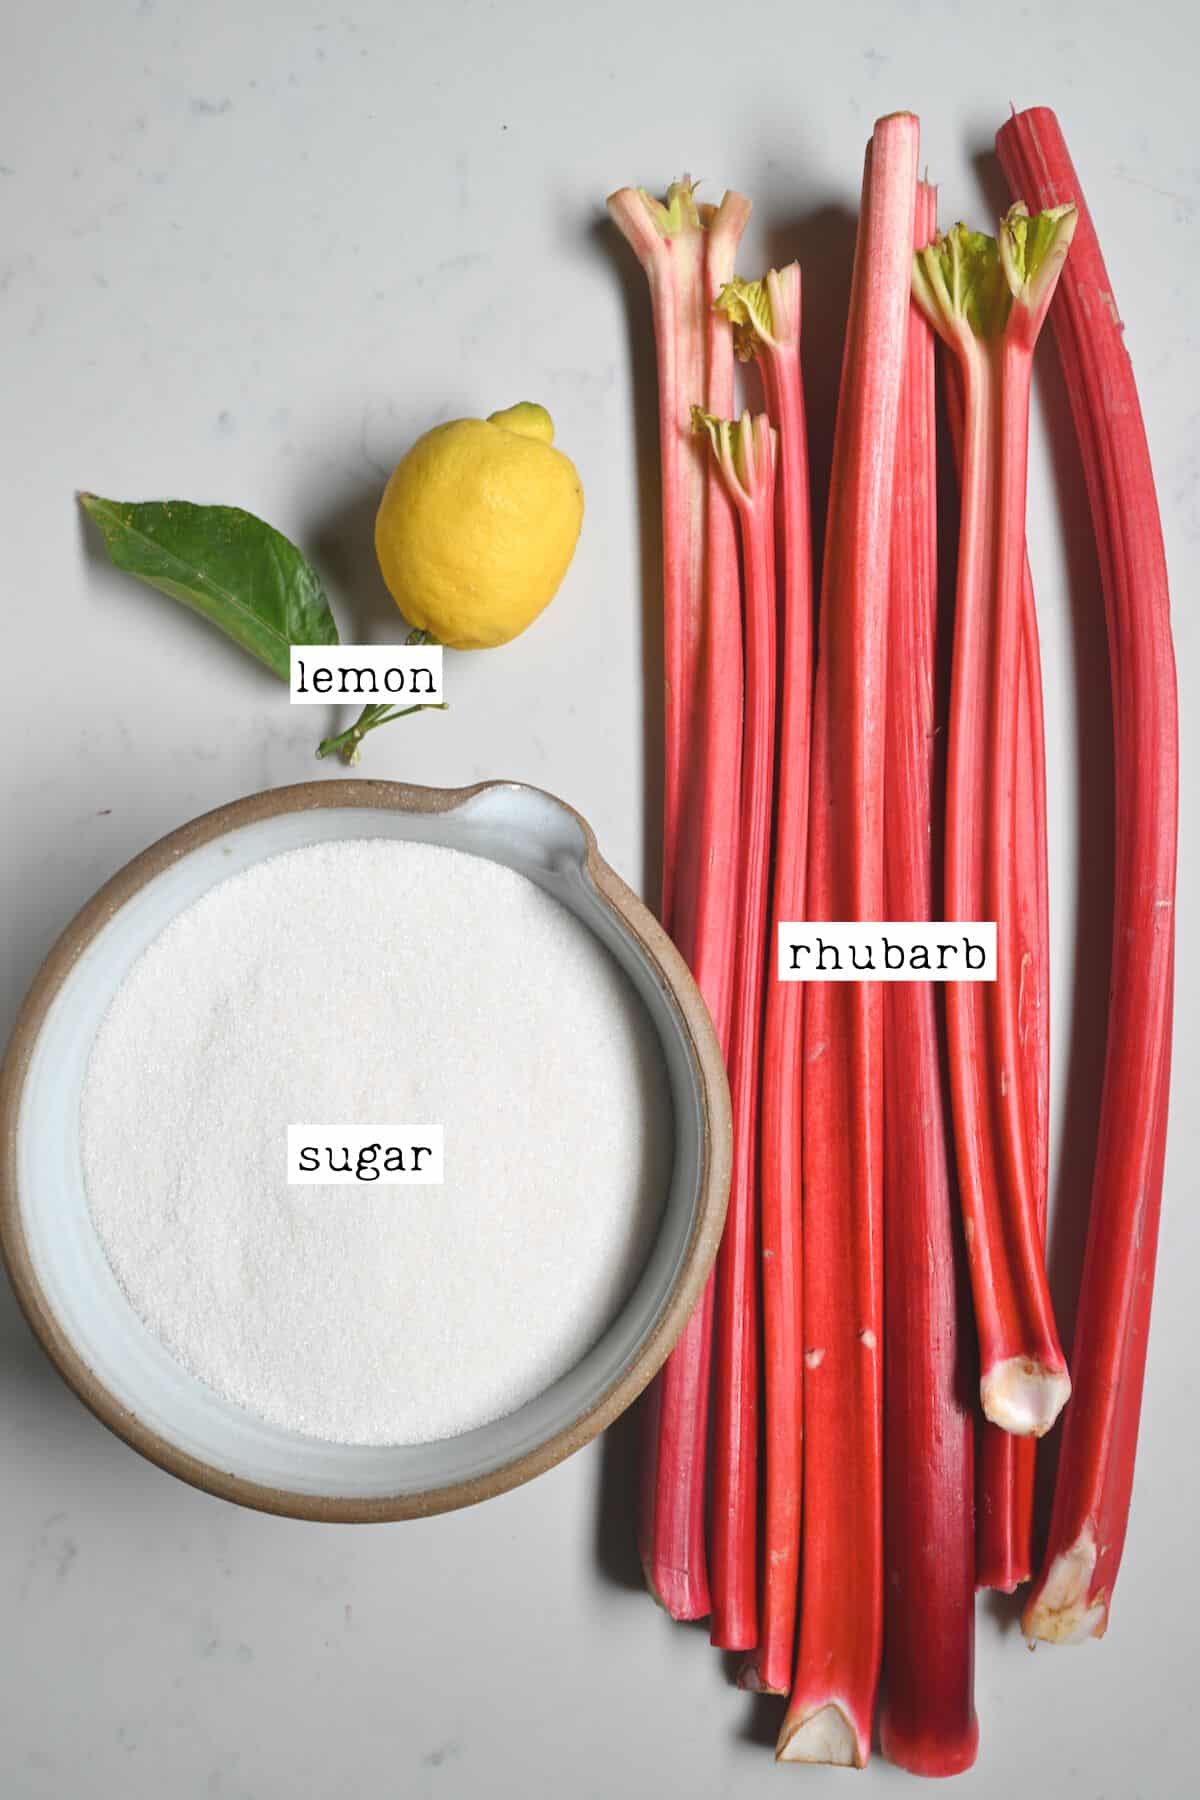 Ingredients for rhubarb jam